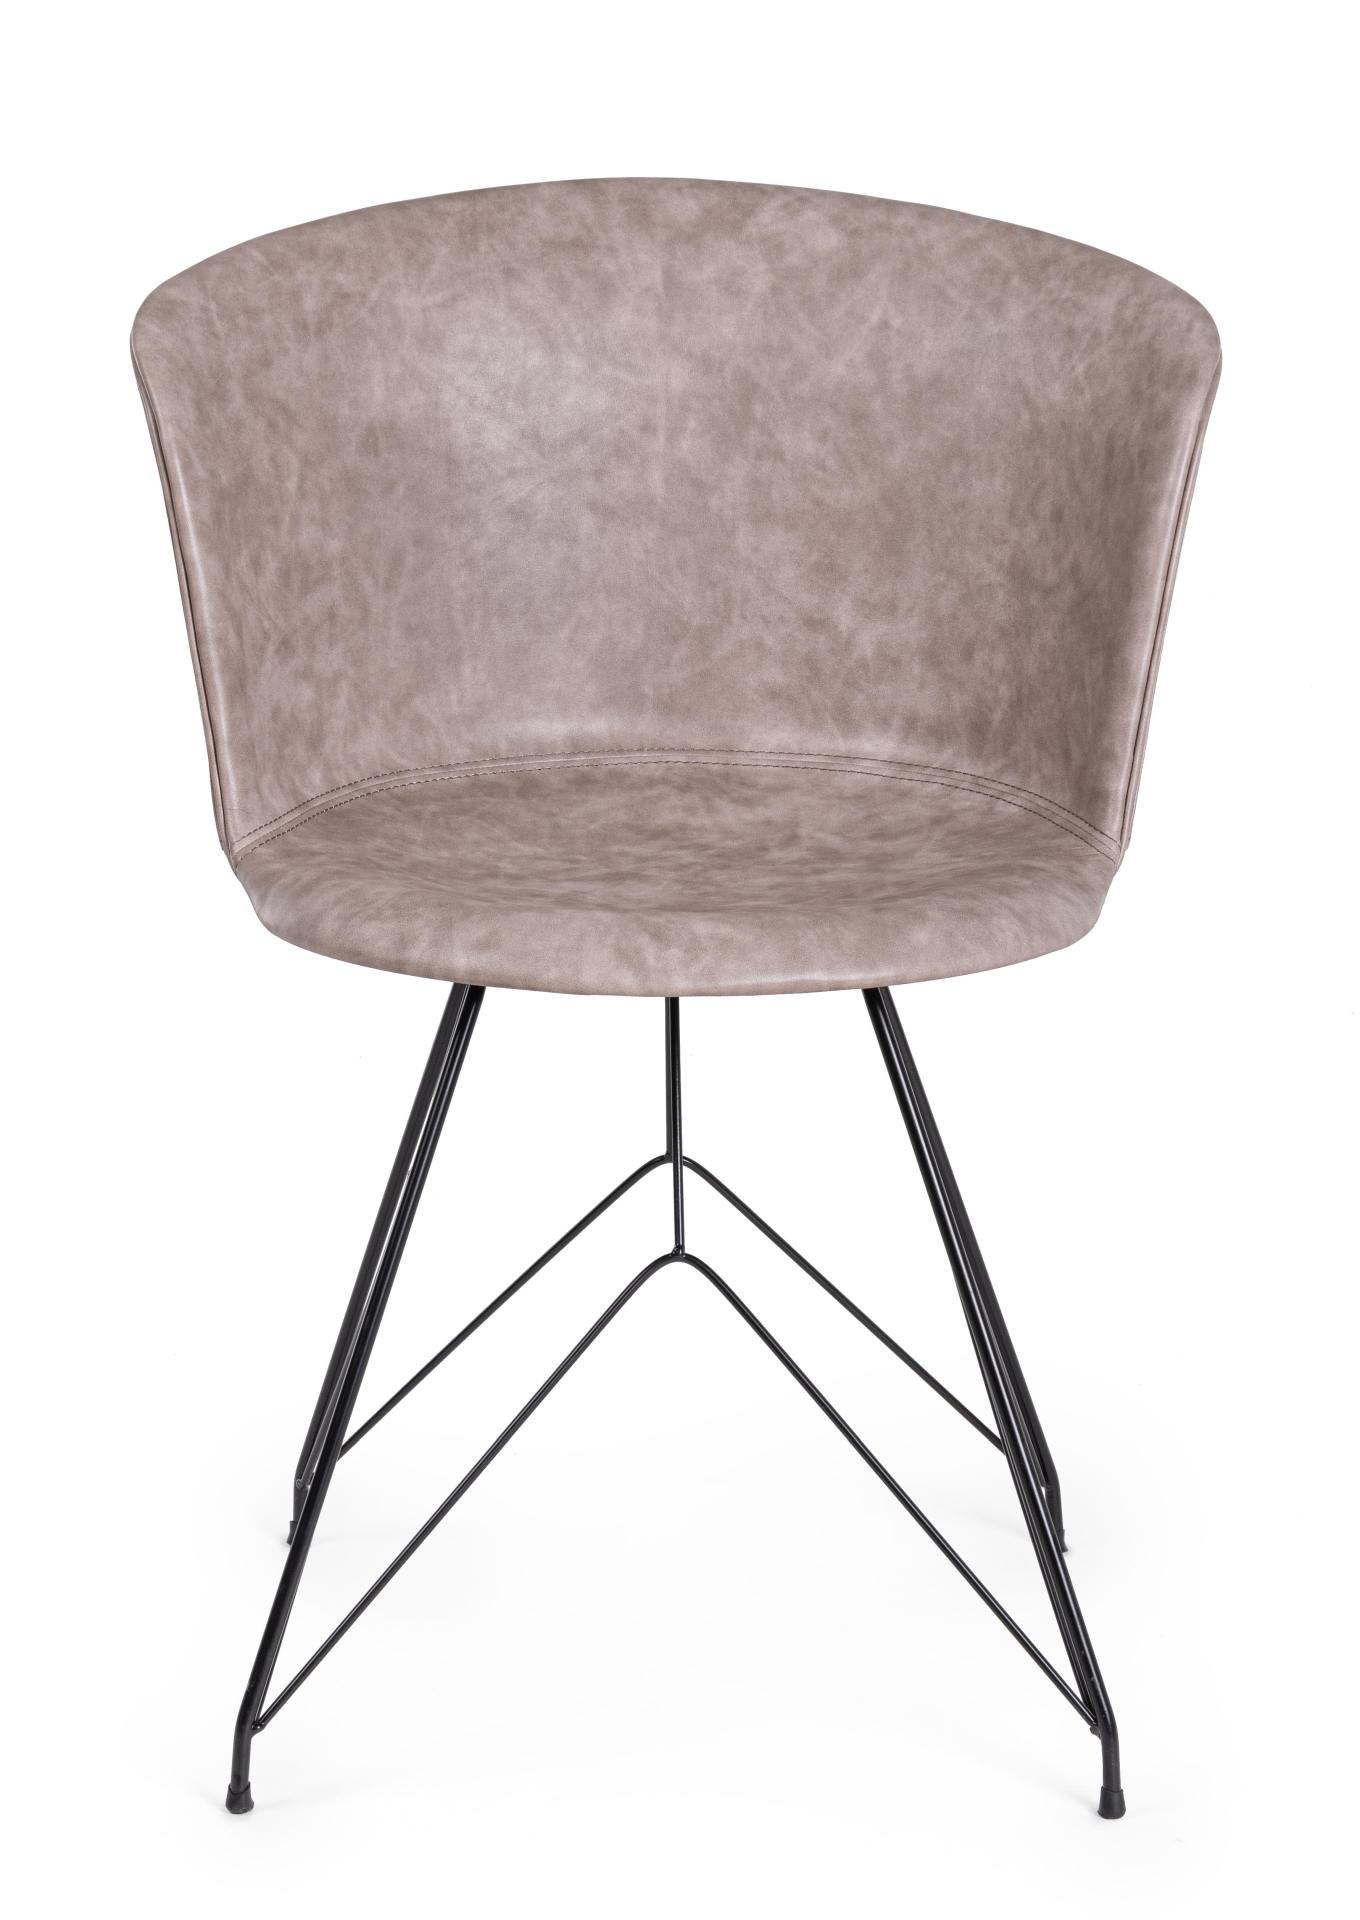 Der Esszimmerstuhl Loft überzeugt mit seinem modernem Design. Gefertigt wurde der Stuhl aus Kunstleder, welches einen Beige Farbton besitzt. Das Gestell ist aus Metall und ist Schwarz. Die Sitzhöhe beträgt 45 cm.